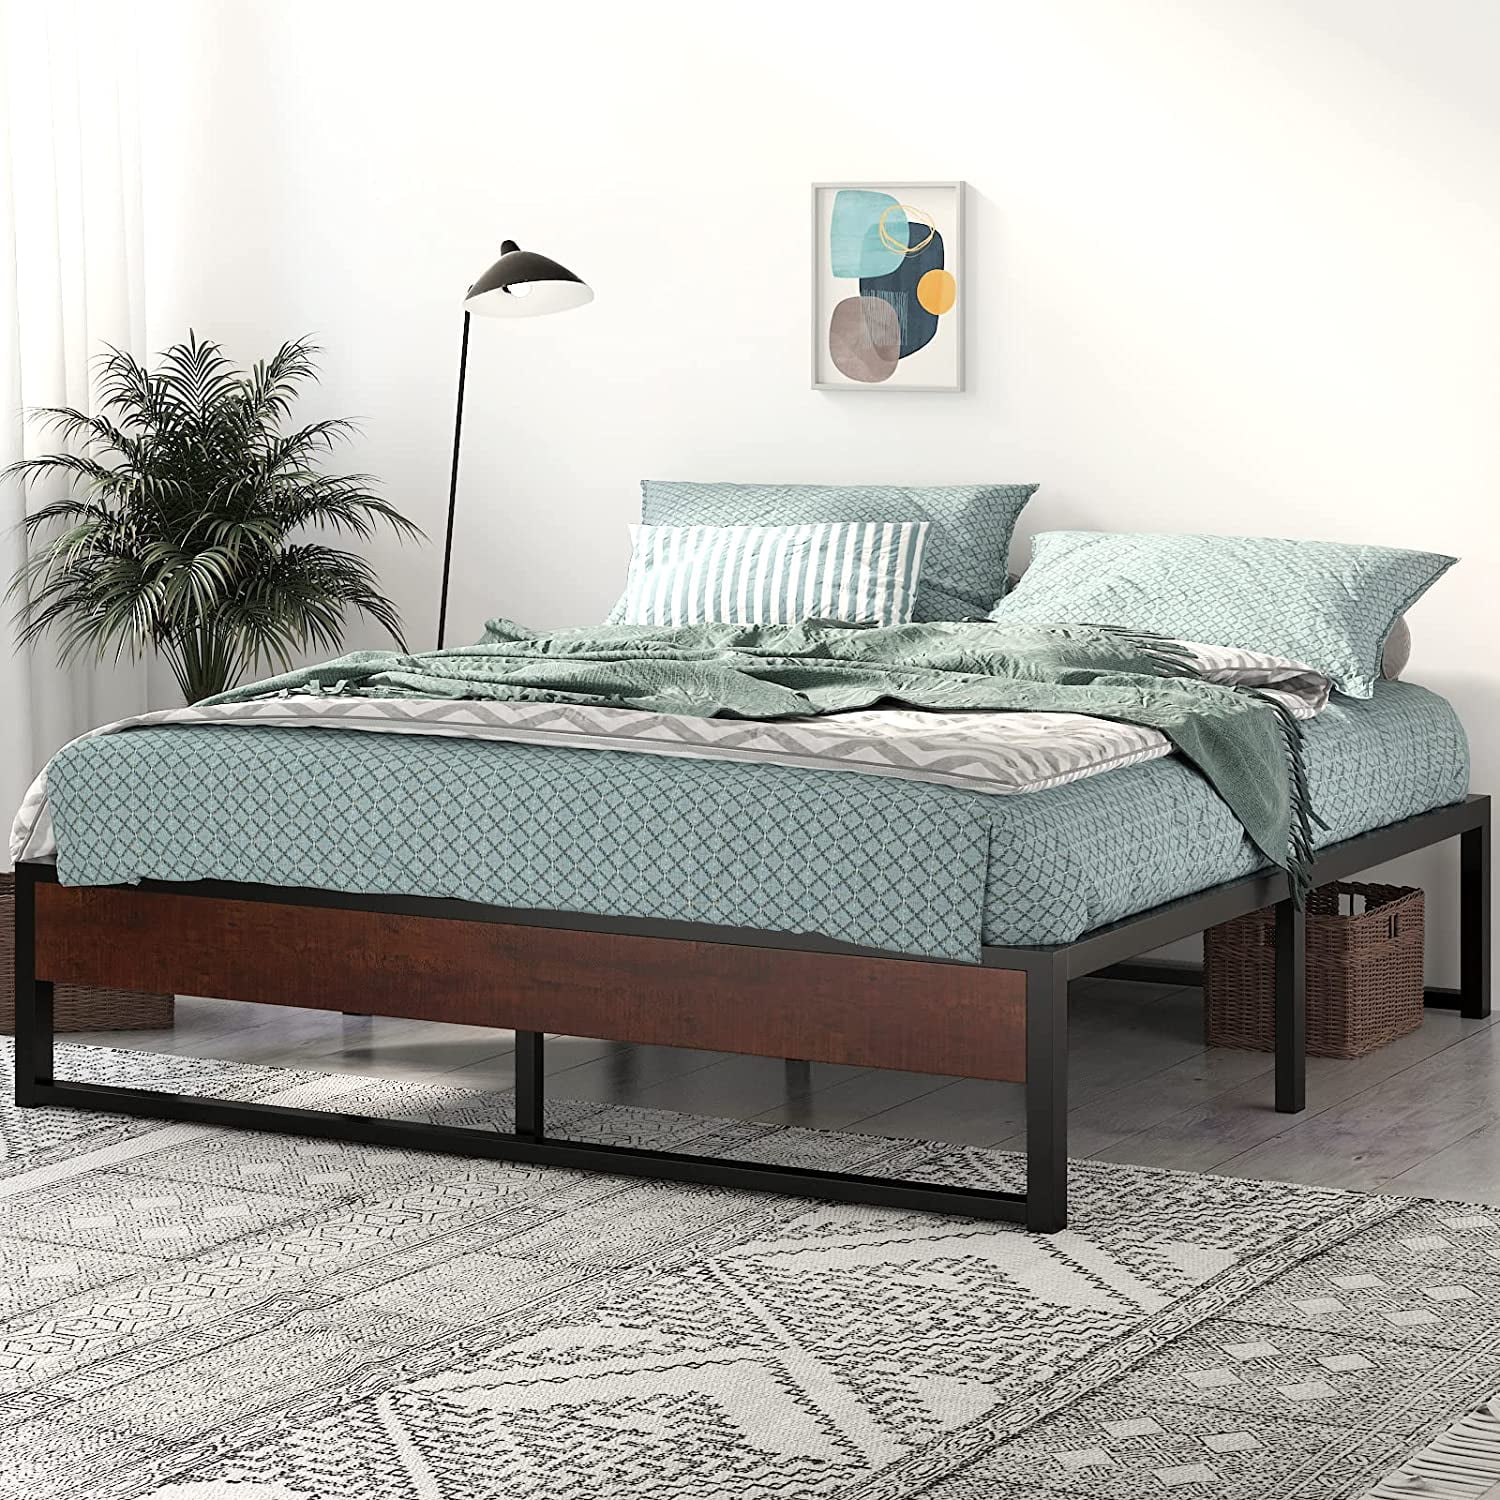 Metal Platform Bed Frame With Steel Slat Support Bedding Furniture King Size New 